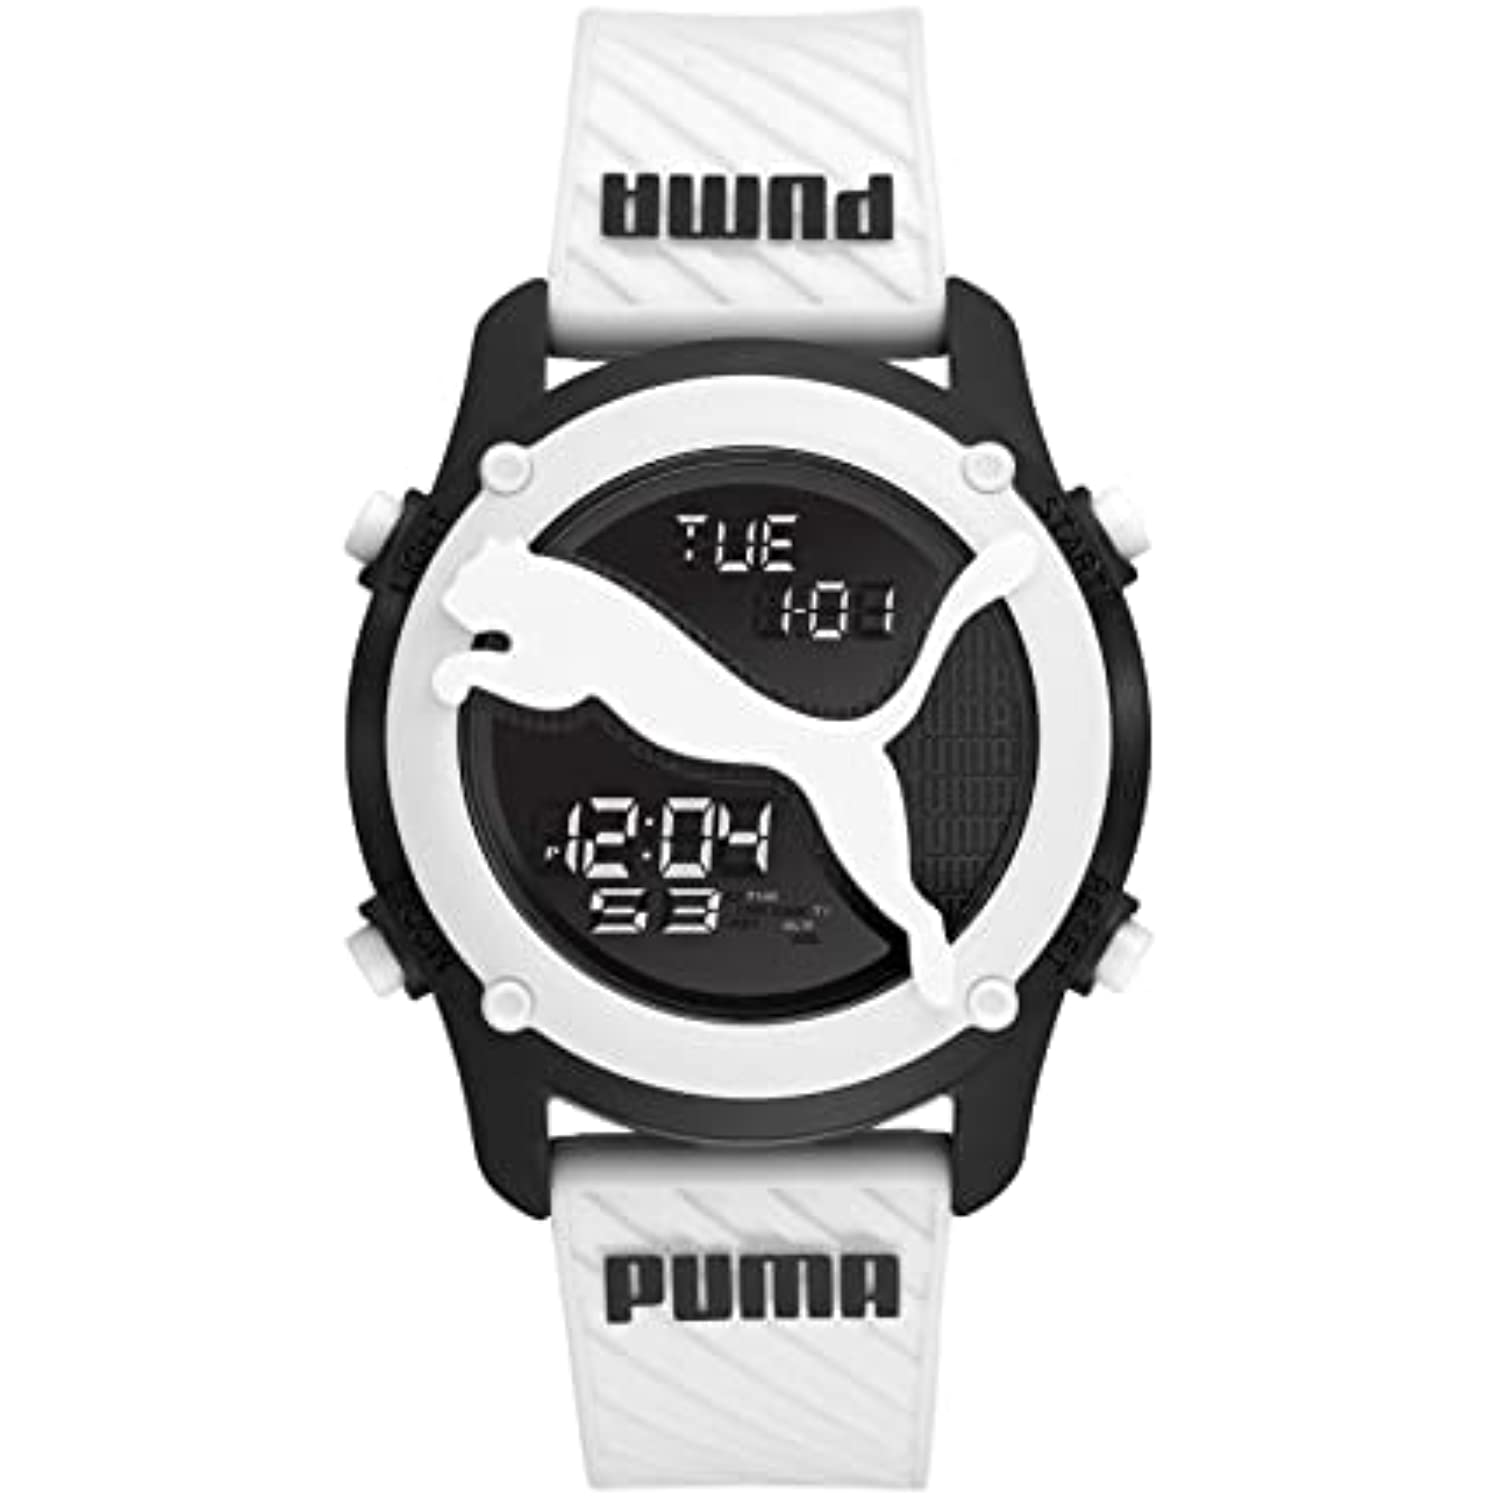 resistirse Comida atención Reloj Digital Puma P5109 para Hombre en Blanco